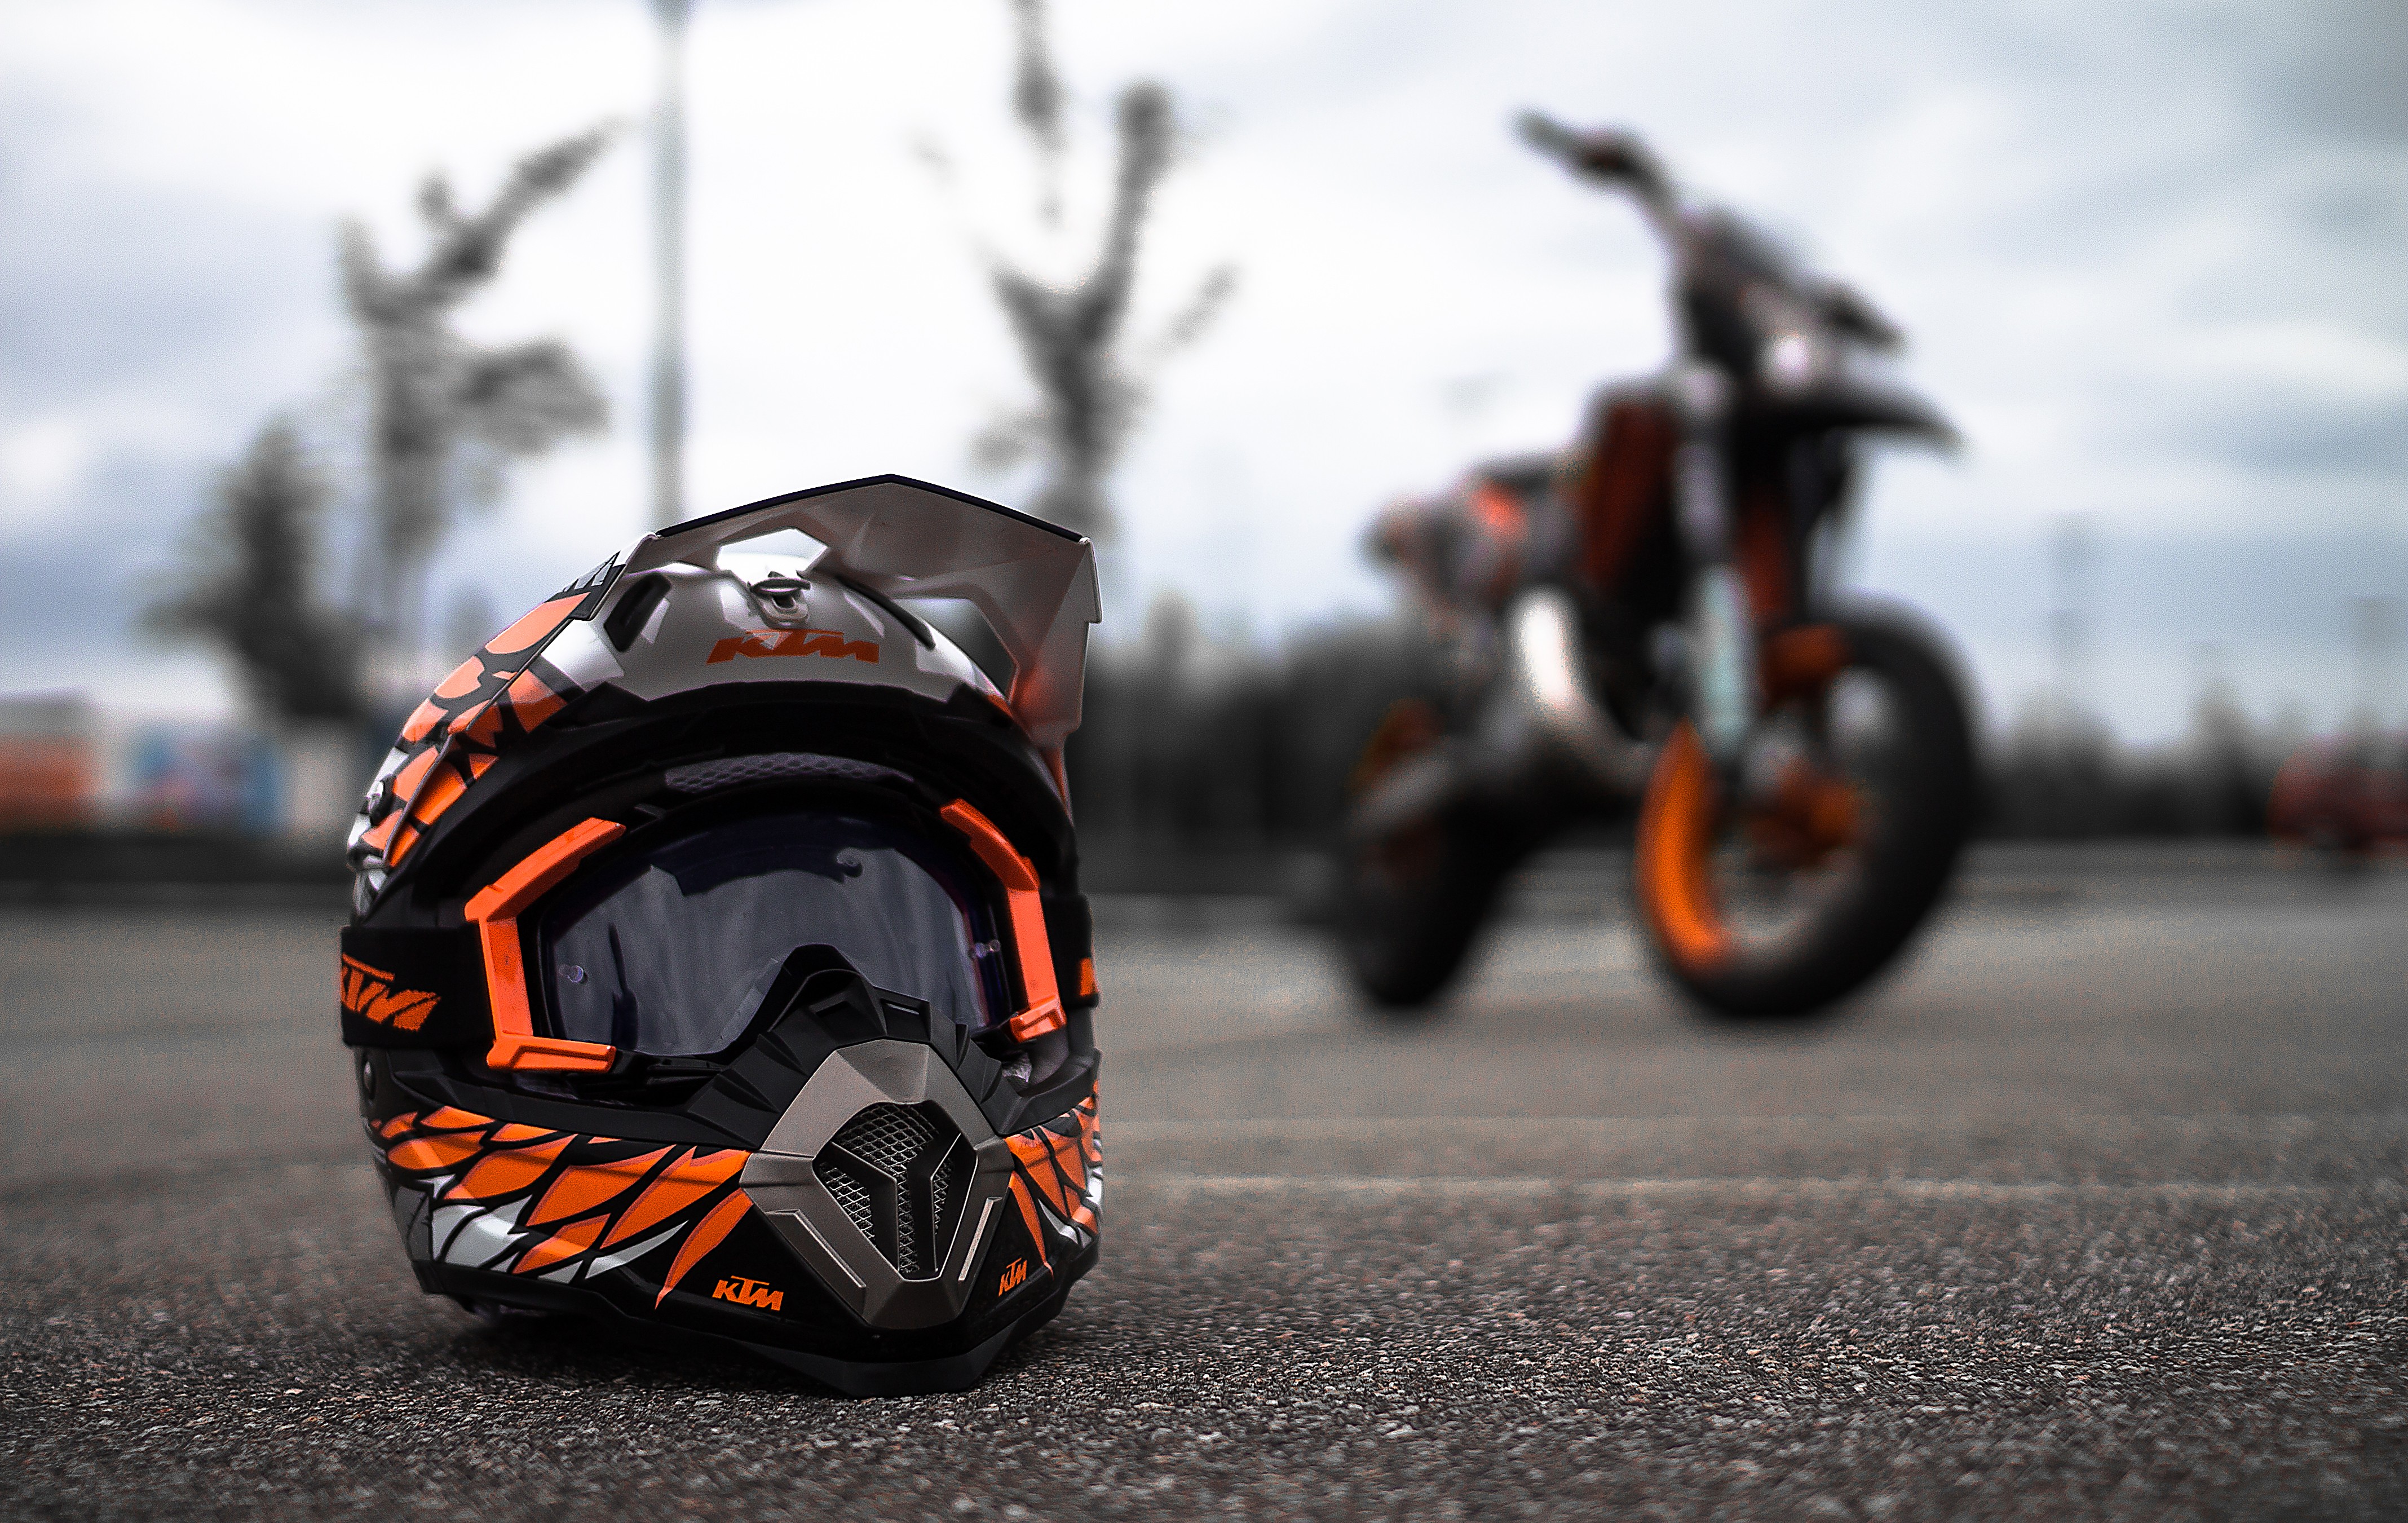 ktm full hd wallpaper,helmet,motorcycle helmet,motorcycle,motorcycling,personal protective equipment